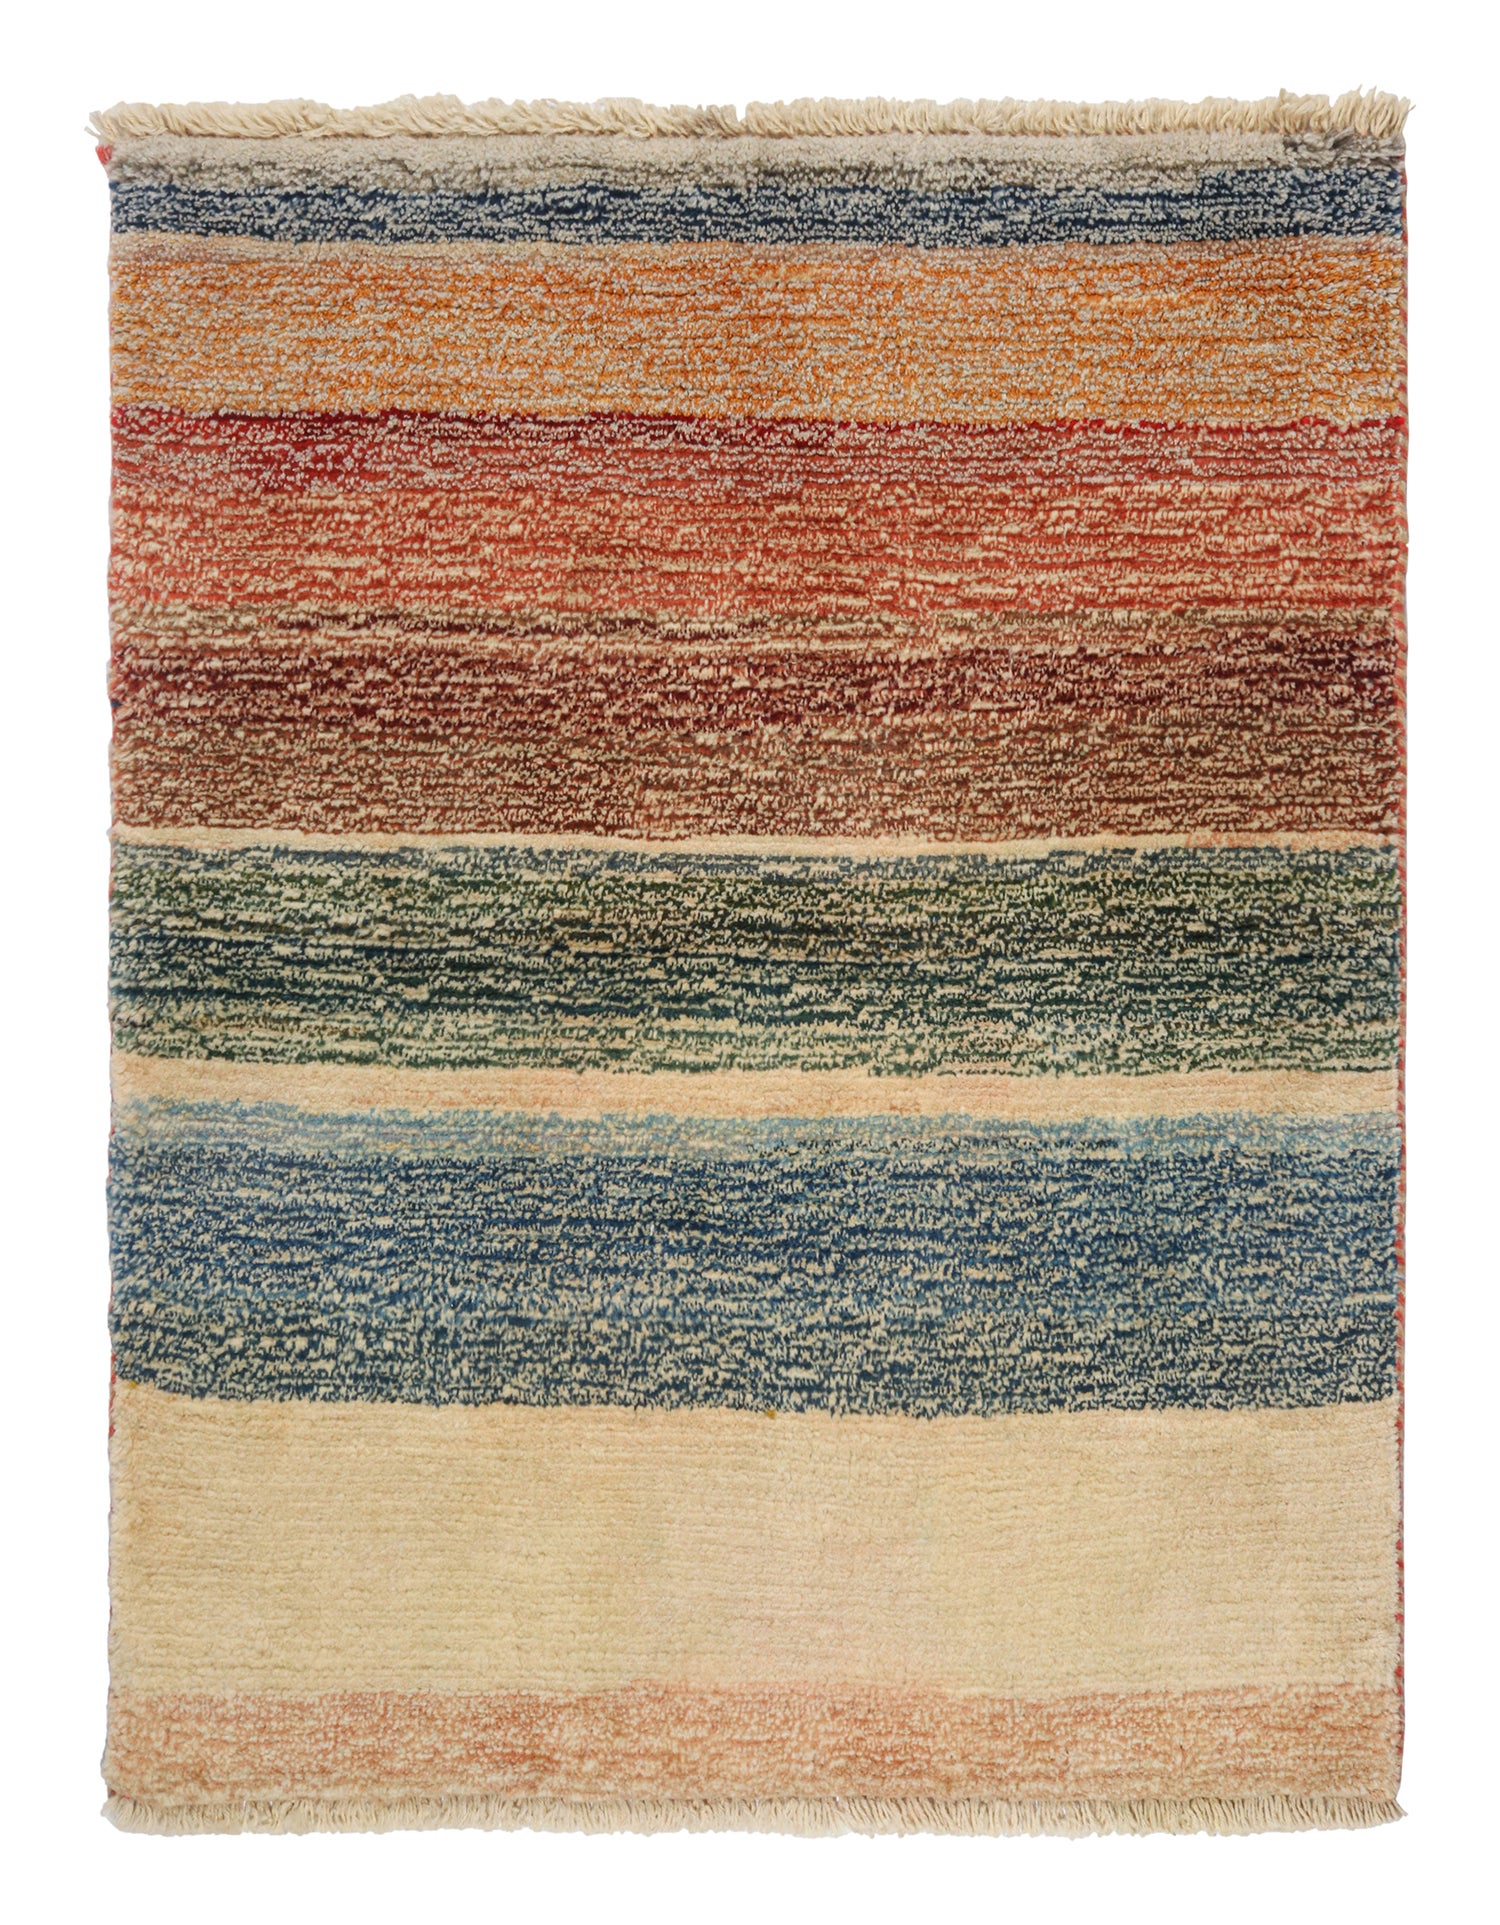 Vintage Gabbeh Tribal Rug in Beige-Brown with Striped Pattern by Rug & Kilim